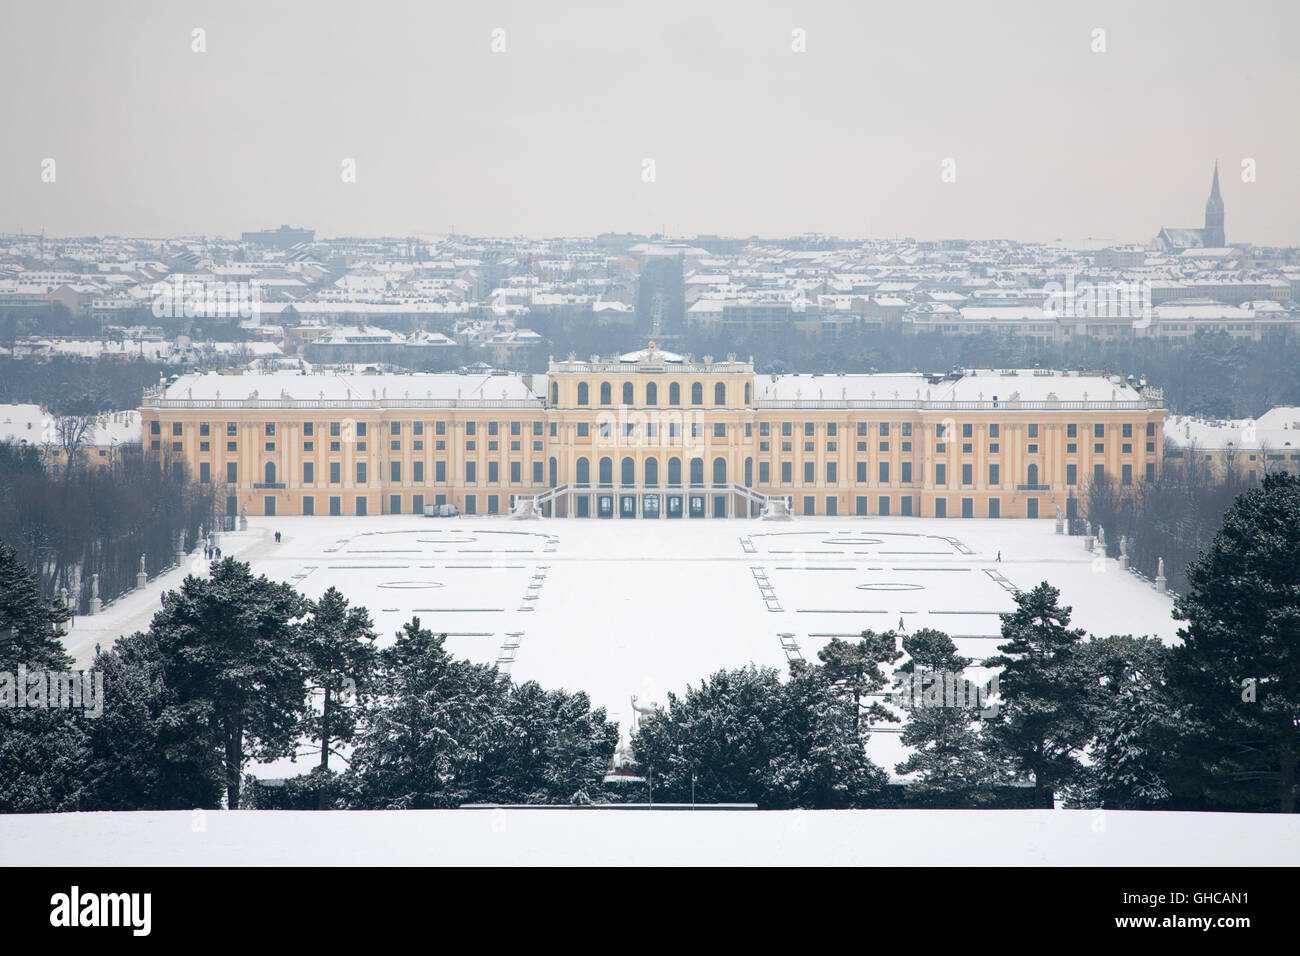 Viena, Austria - 15 de enero de 2013: el palacio de Schonbrunn en invierno. Foto de stock